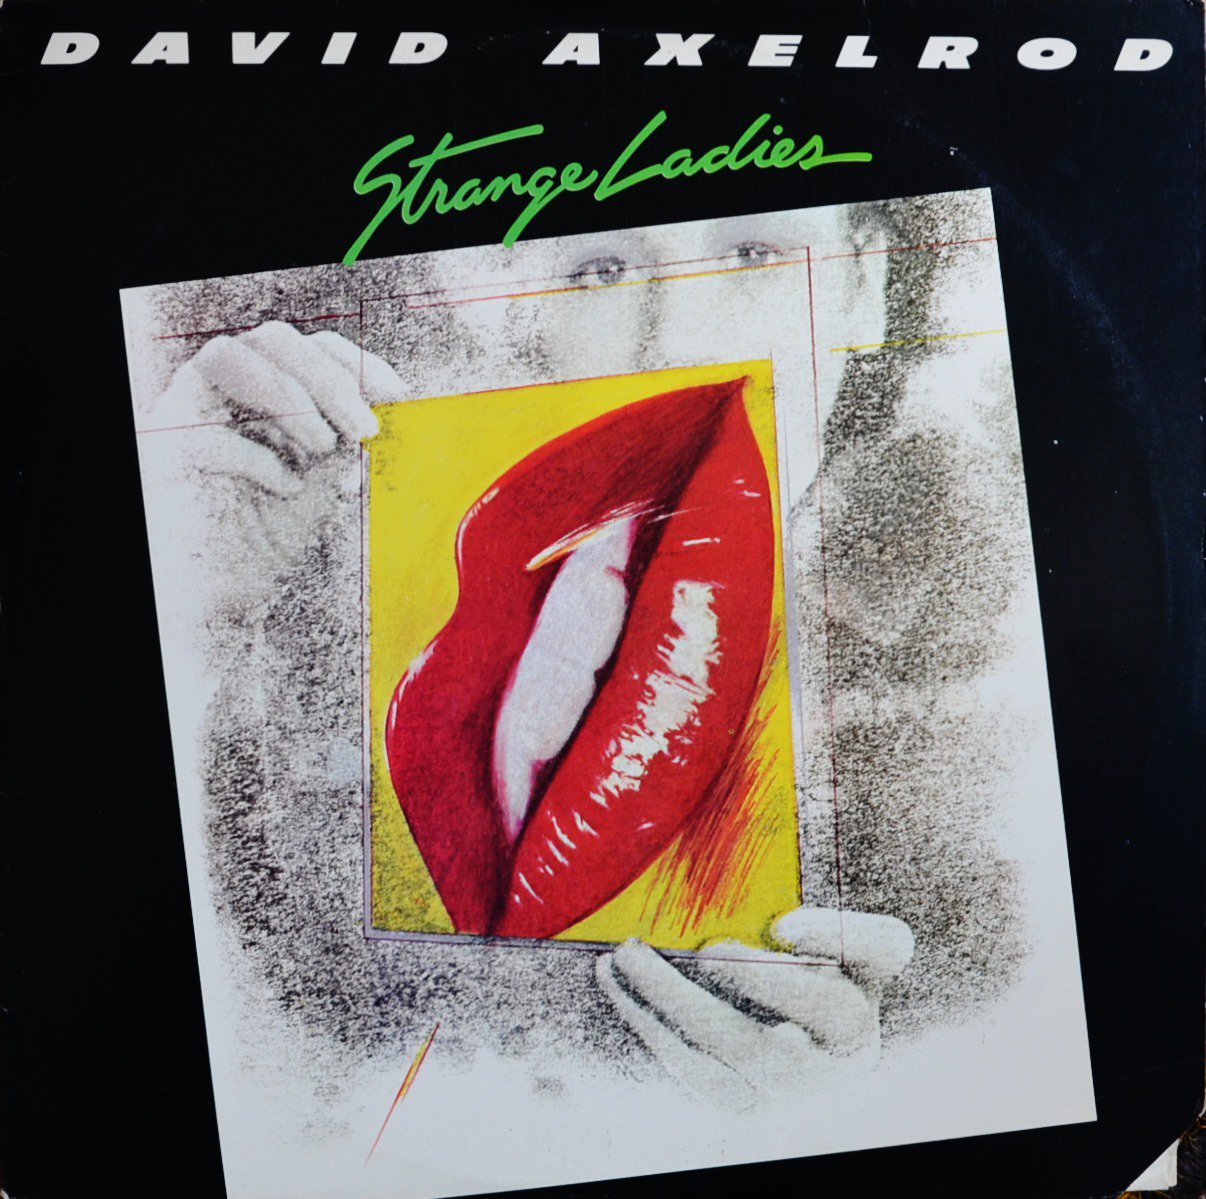 DAVID AXELROD / STRANGE LADIES (LP)